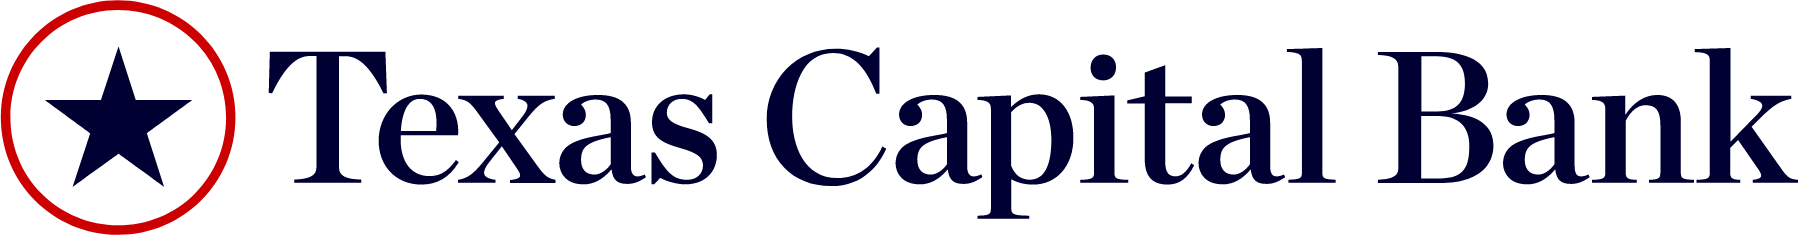 Texas Capital Bancshares logo large (transparent PNG)